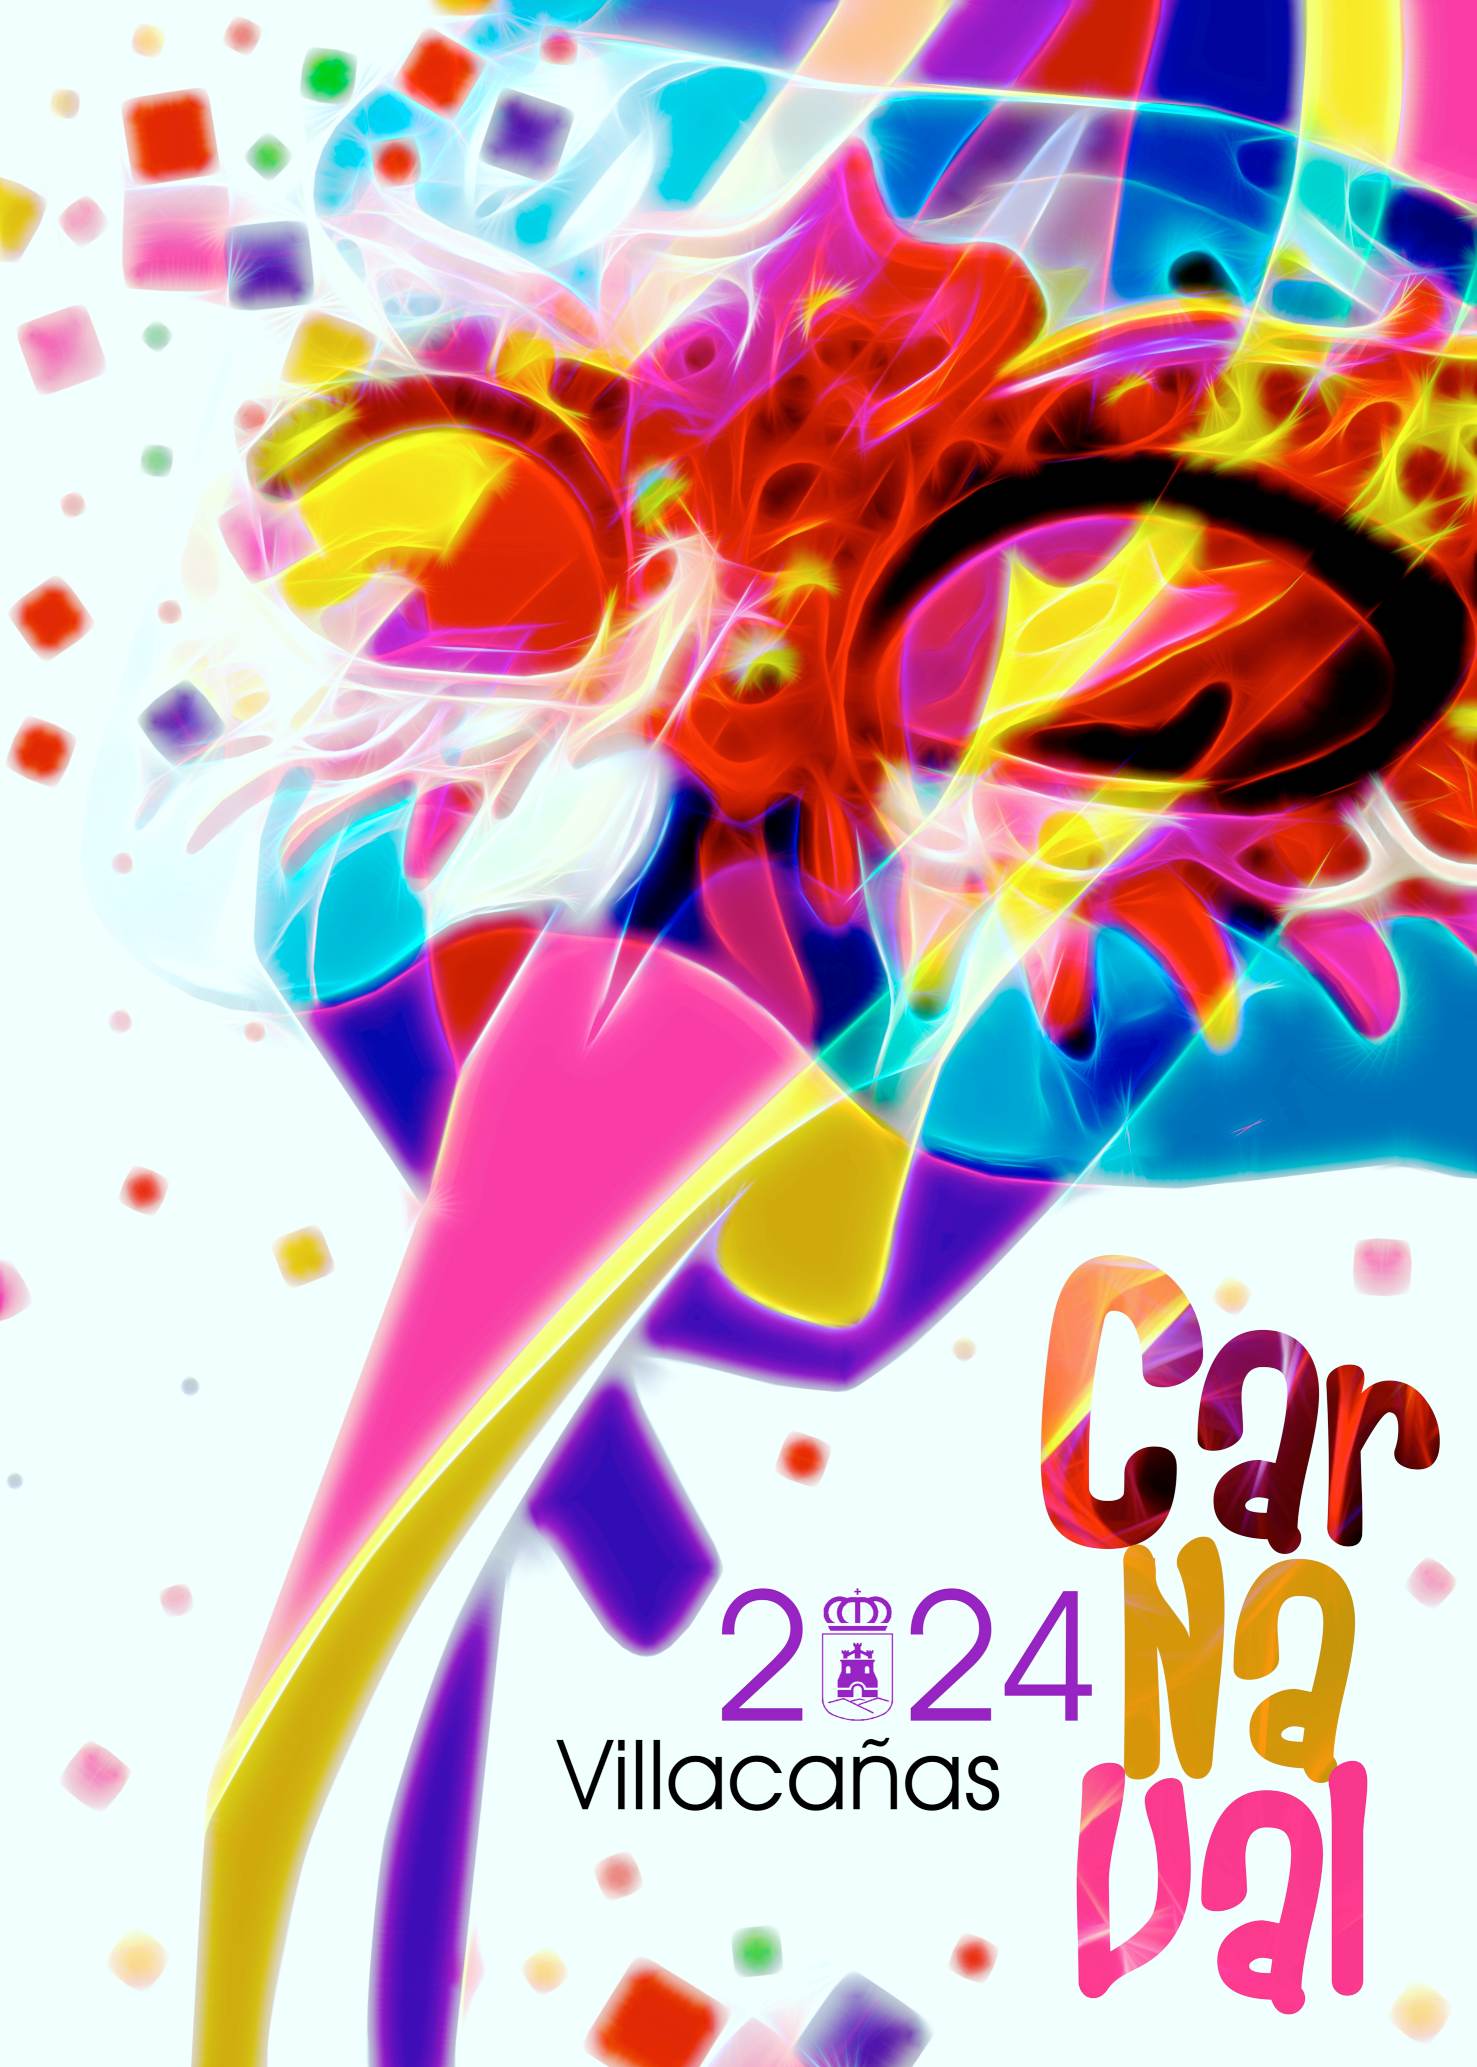 El carnaval especial del CEIP Santa Bárbara se suma a las actividades programadas del Carnaval 2024